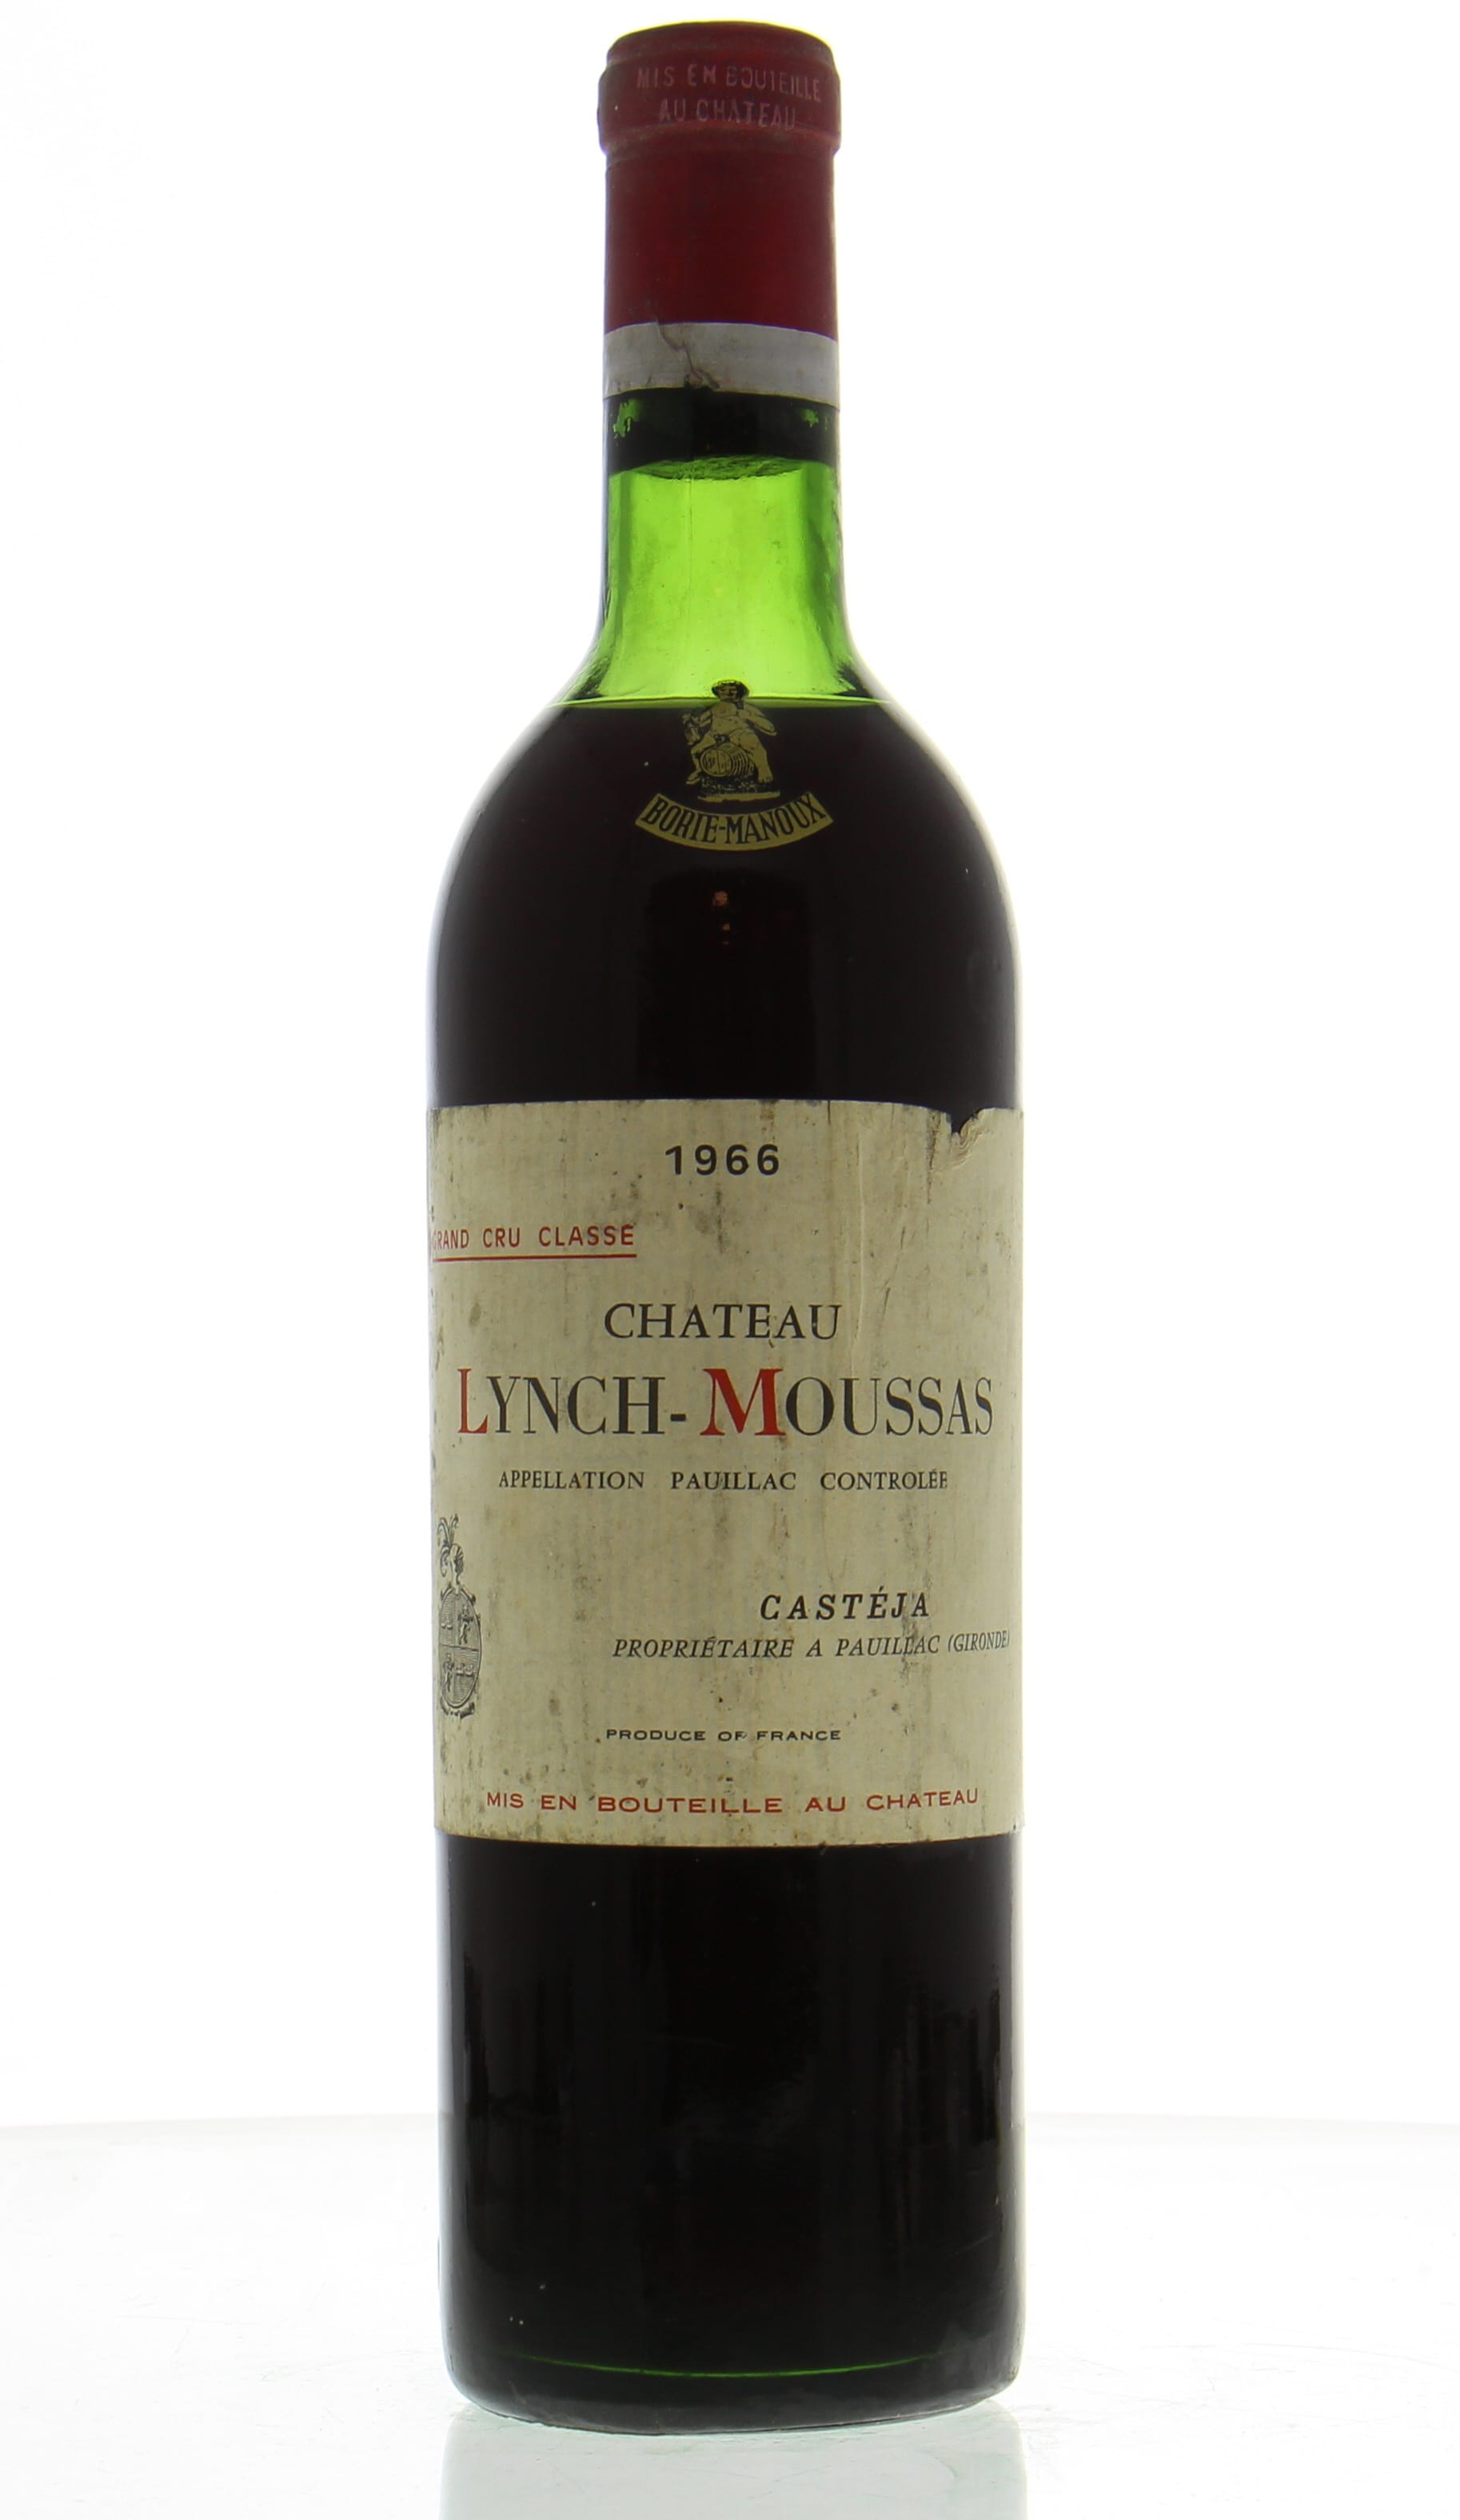 Chateau Lynch-Moussas - Chateau Lynch-Moussas 1966 Top Shoulder